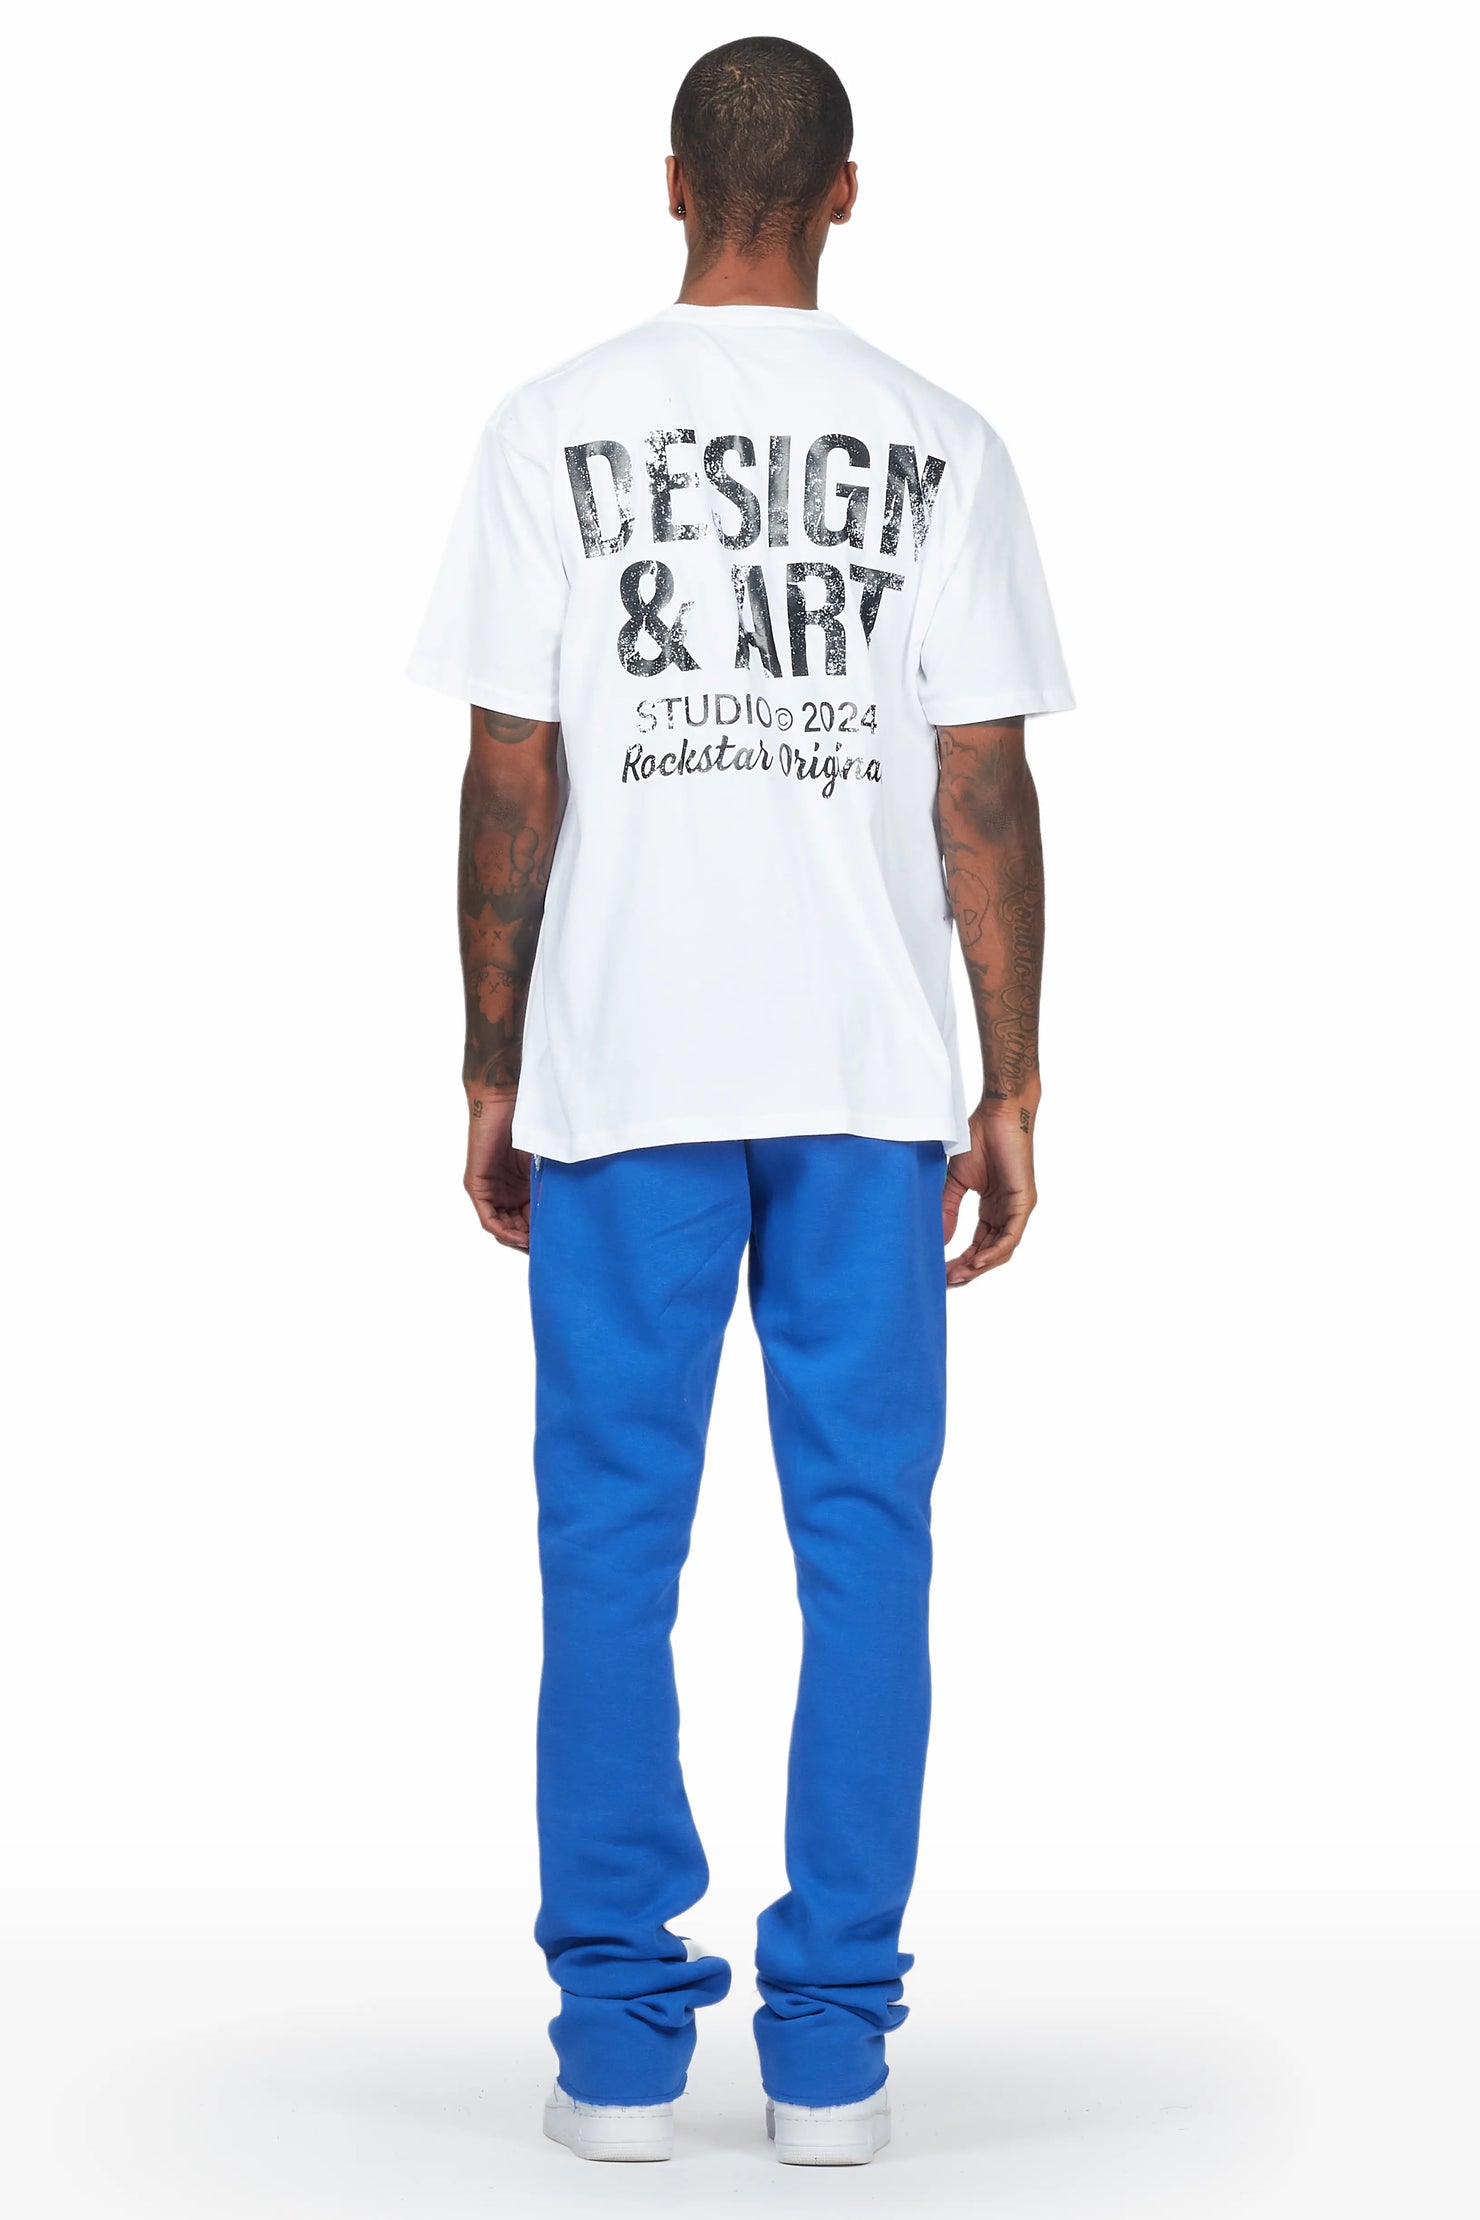 Mancha White/Blue T-Shirt Stacked Flare Track Set